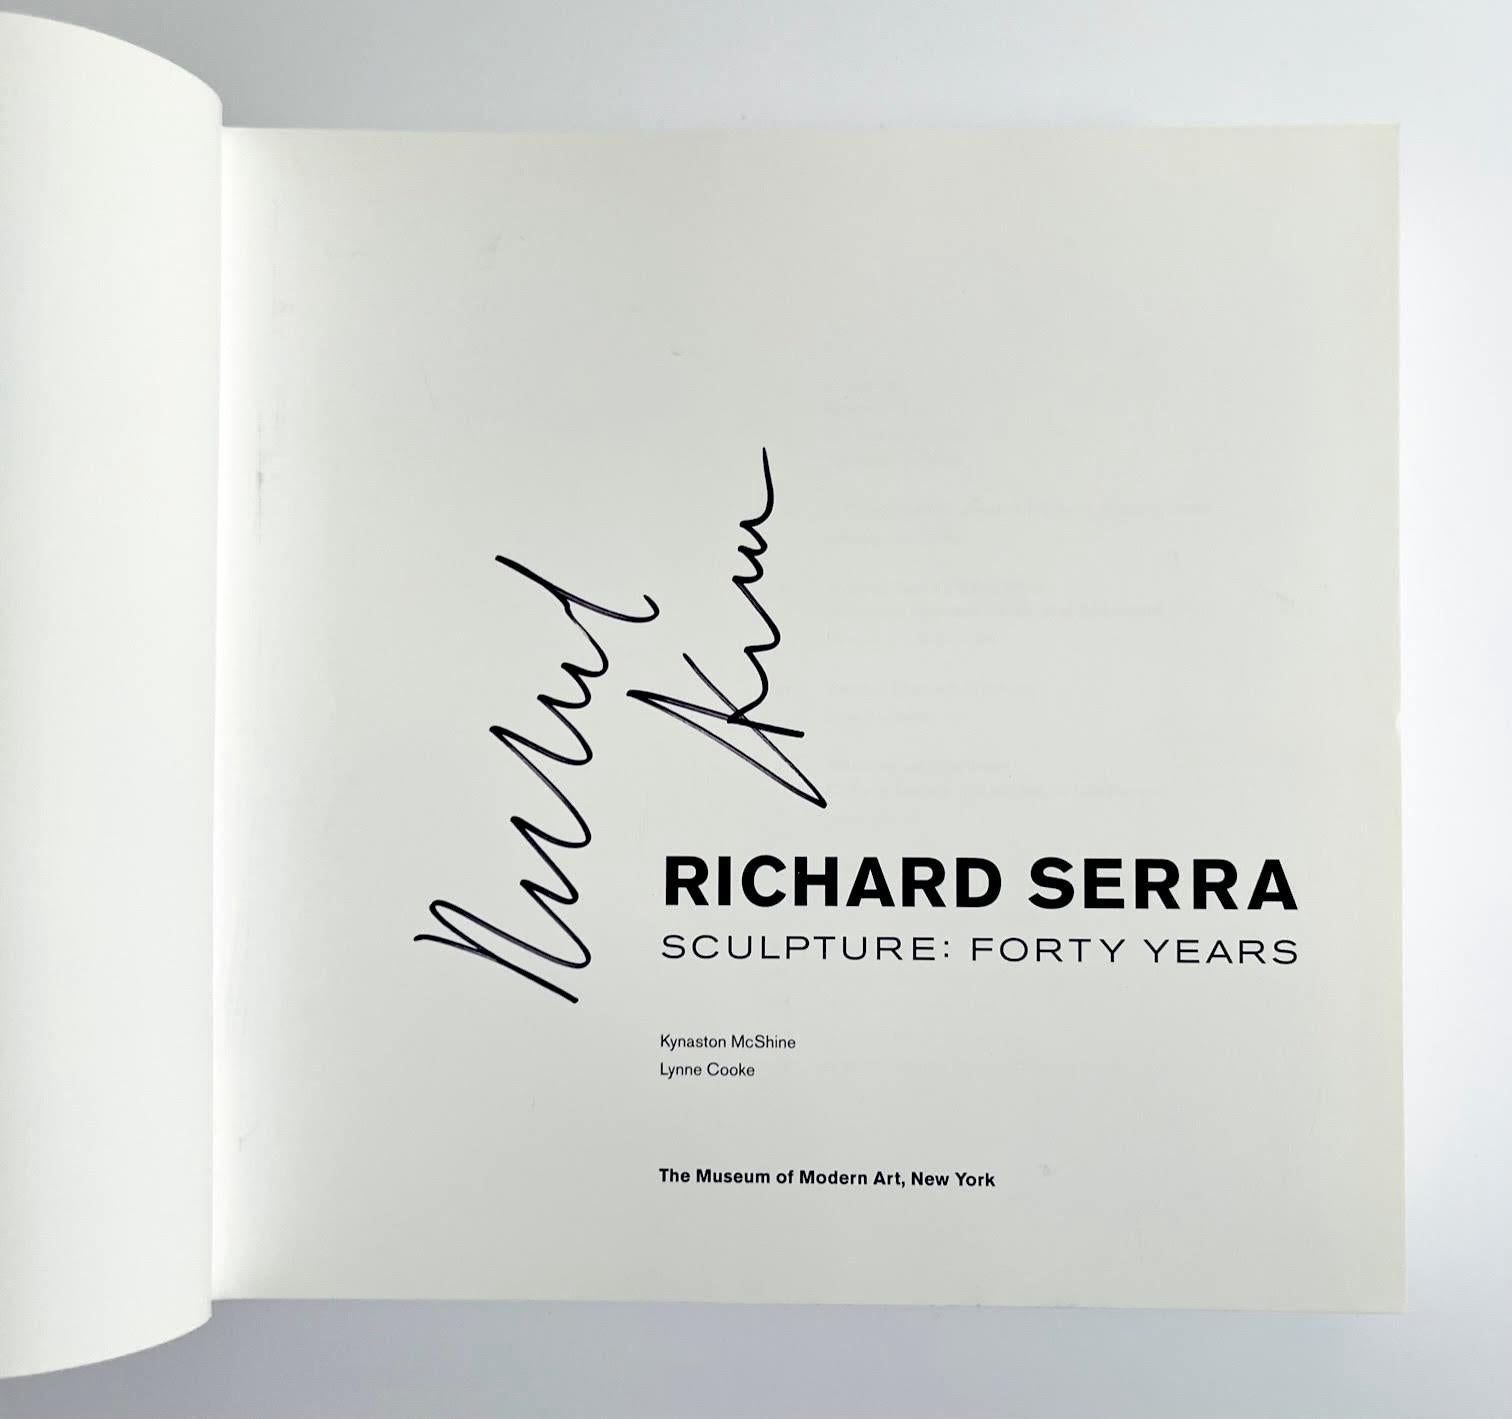 Richard SERRA
Sculpture : Quarante ans (signé à la main par Richard Serra), 2007
Monographie reliée (Signée par Richard Serra sur la page de titre)
Signé à la main au marqueur par Richard Serra sur la page de titre.
10 1/4 × 11 × 2 pouces
Non